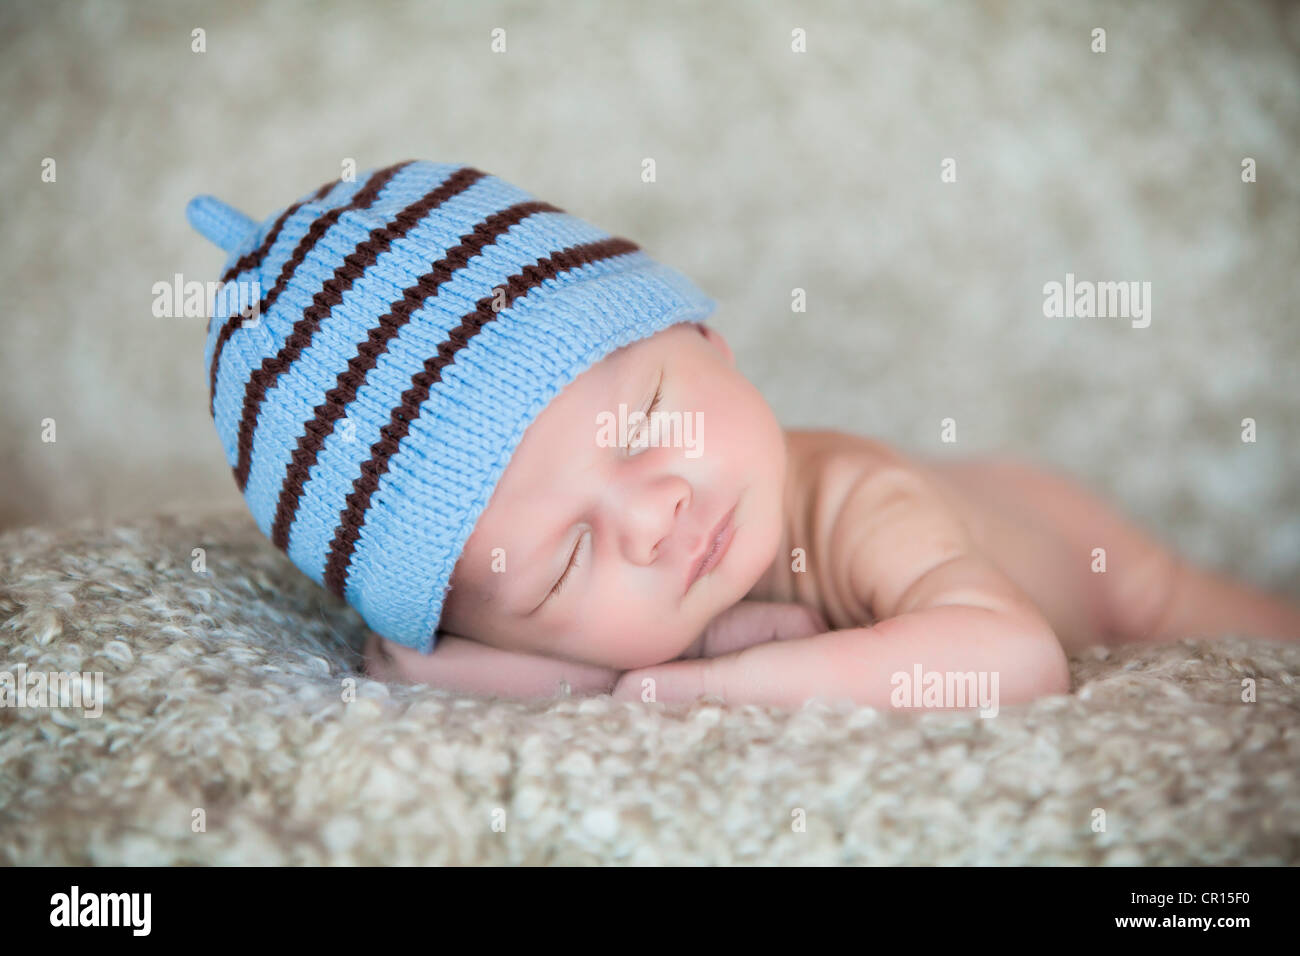 Bebé recién nacido niña vistiendo gorro blanco tejido durmiendo en